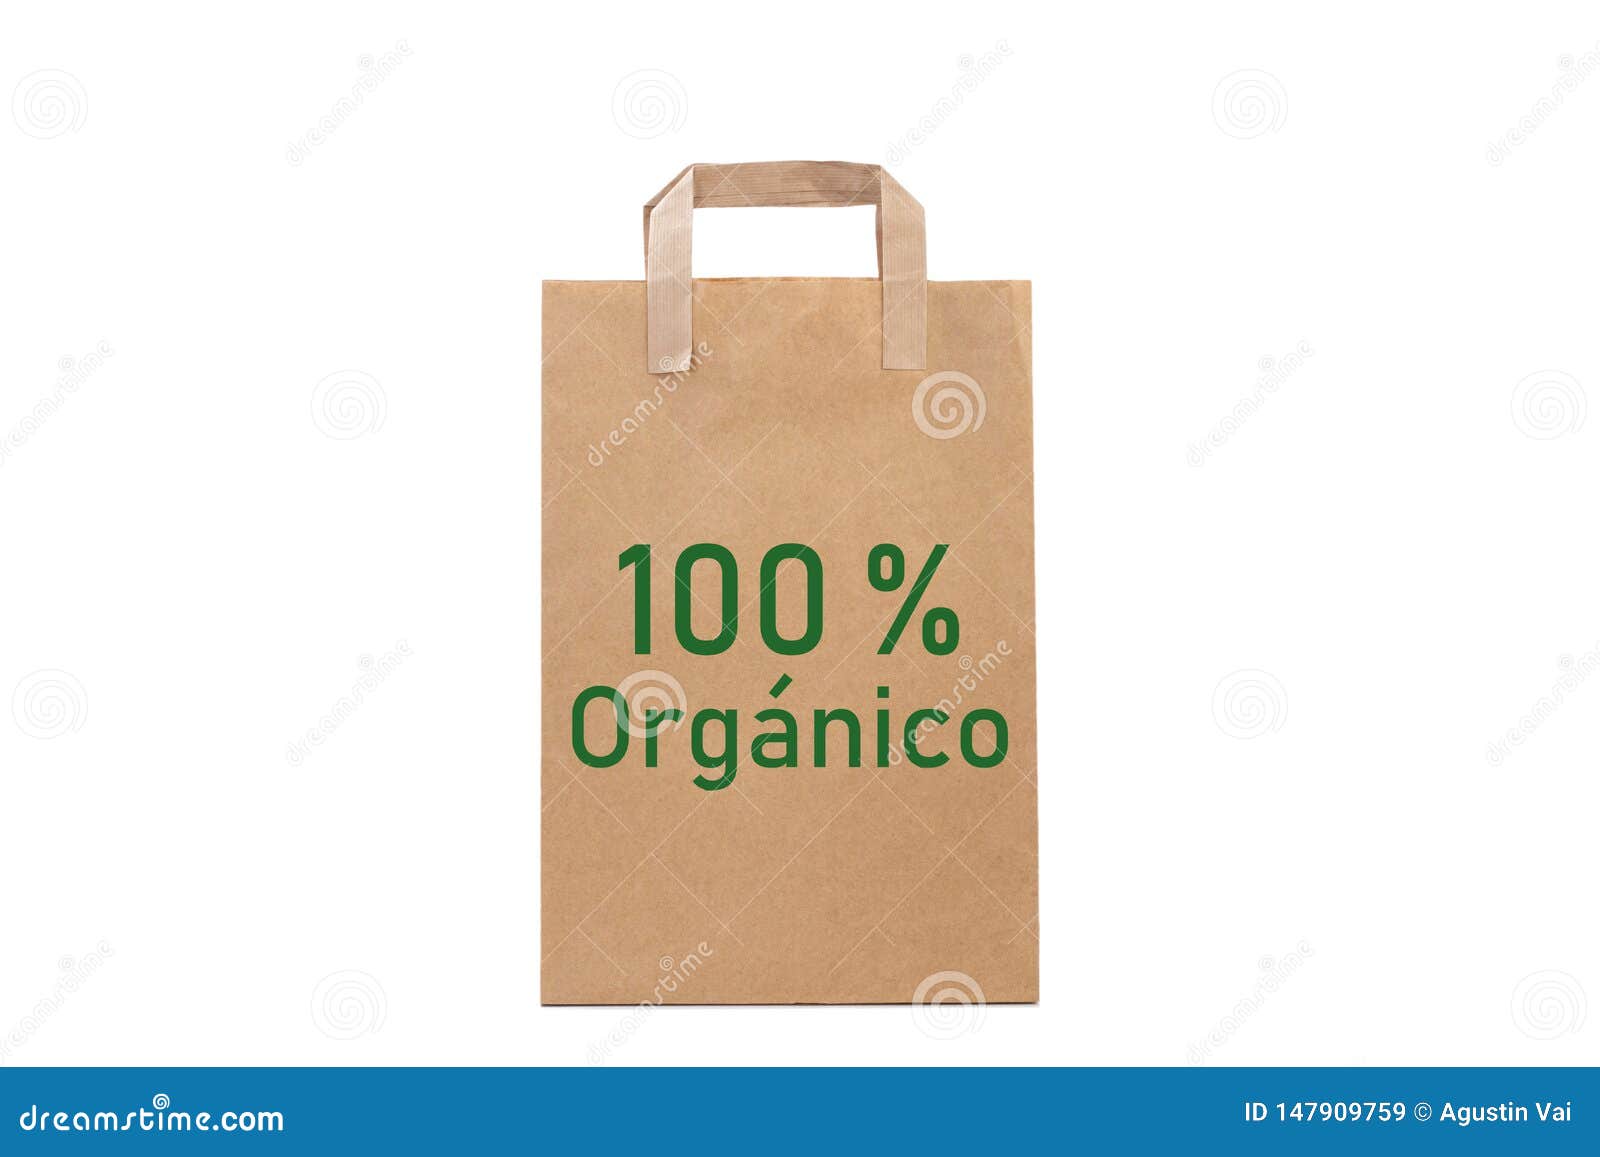 100% orgÃÂ¡nico organic word write in a paper bag